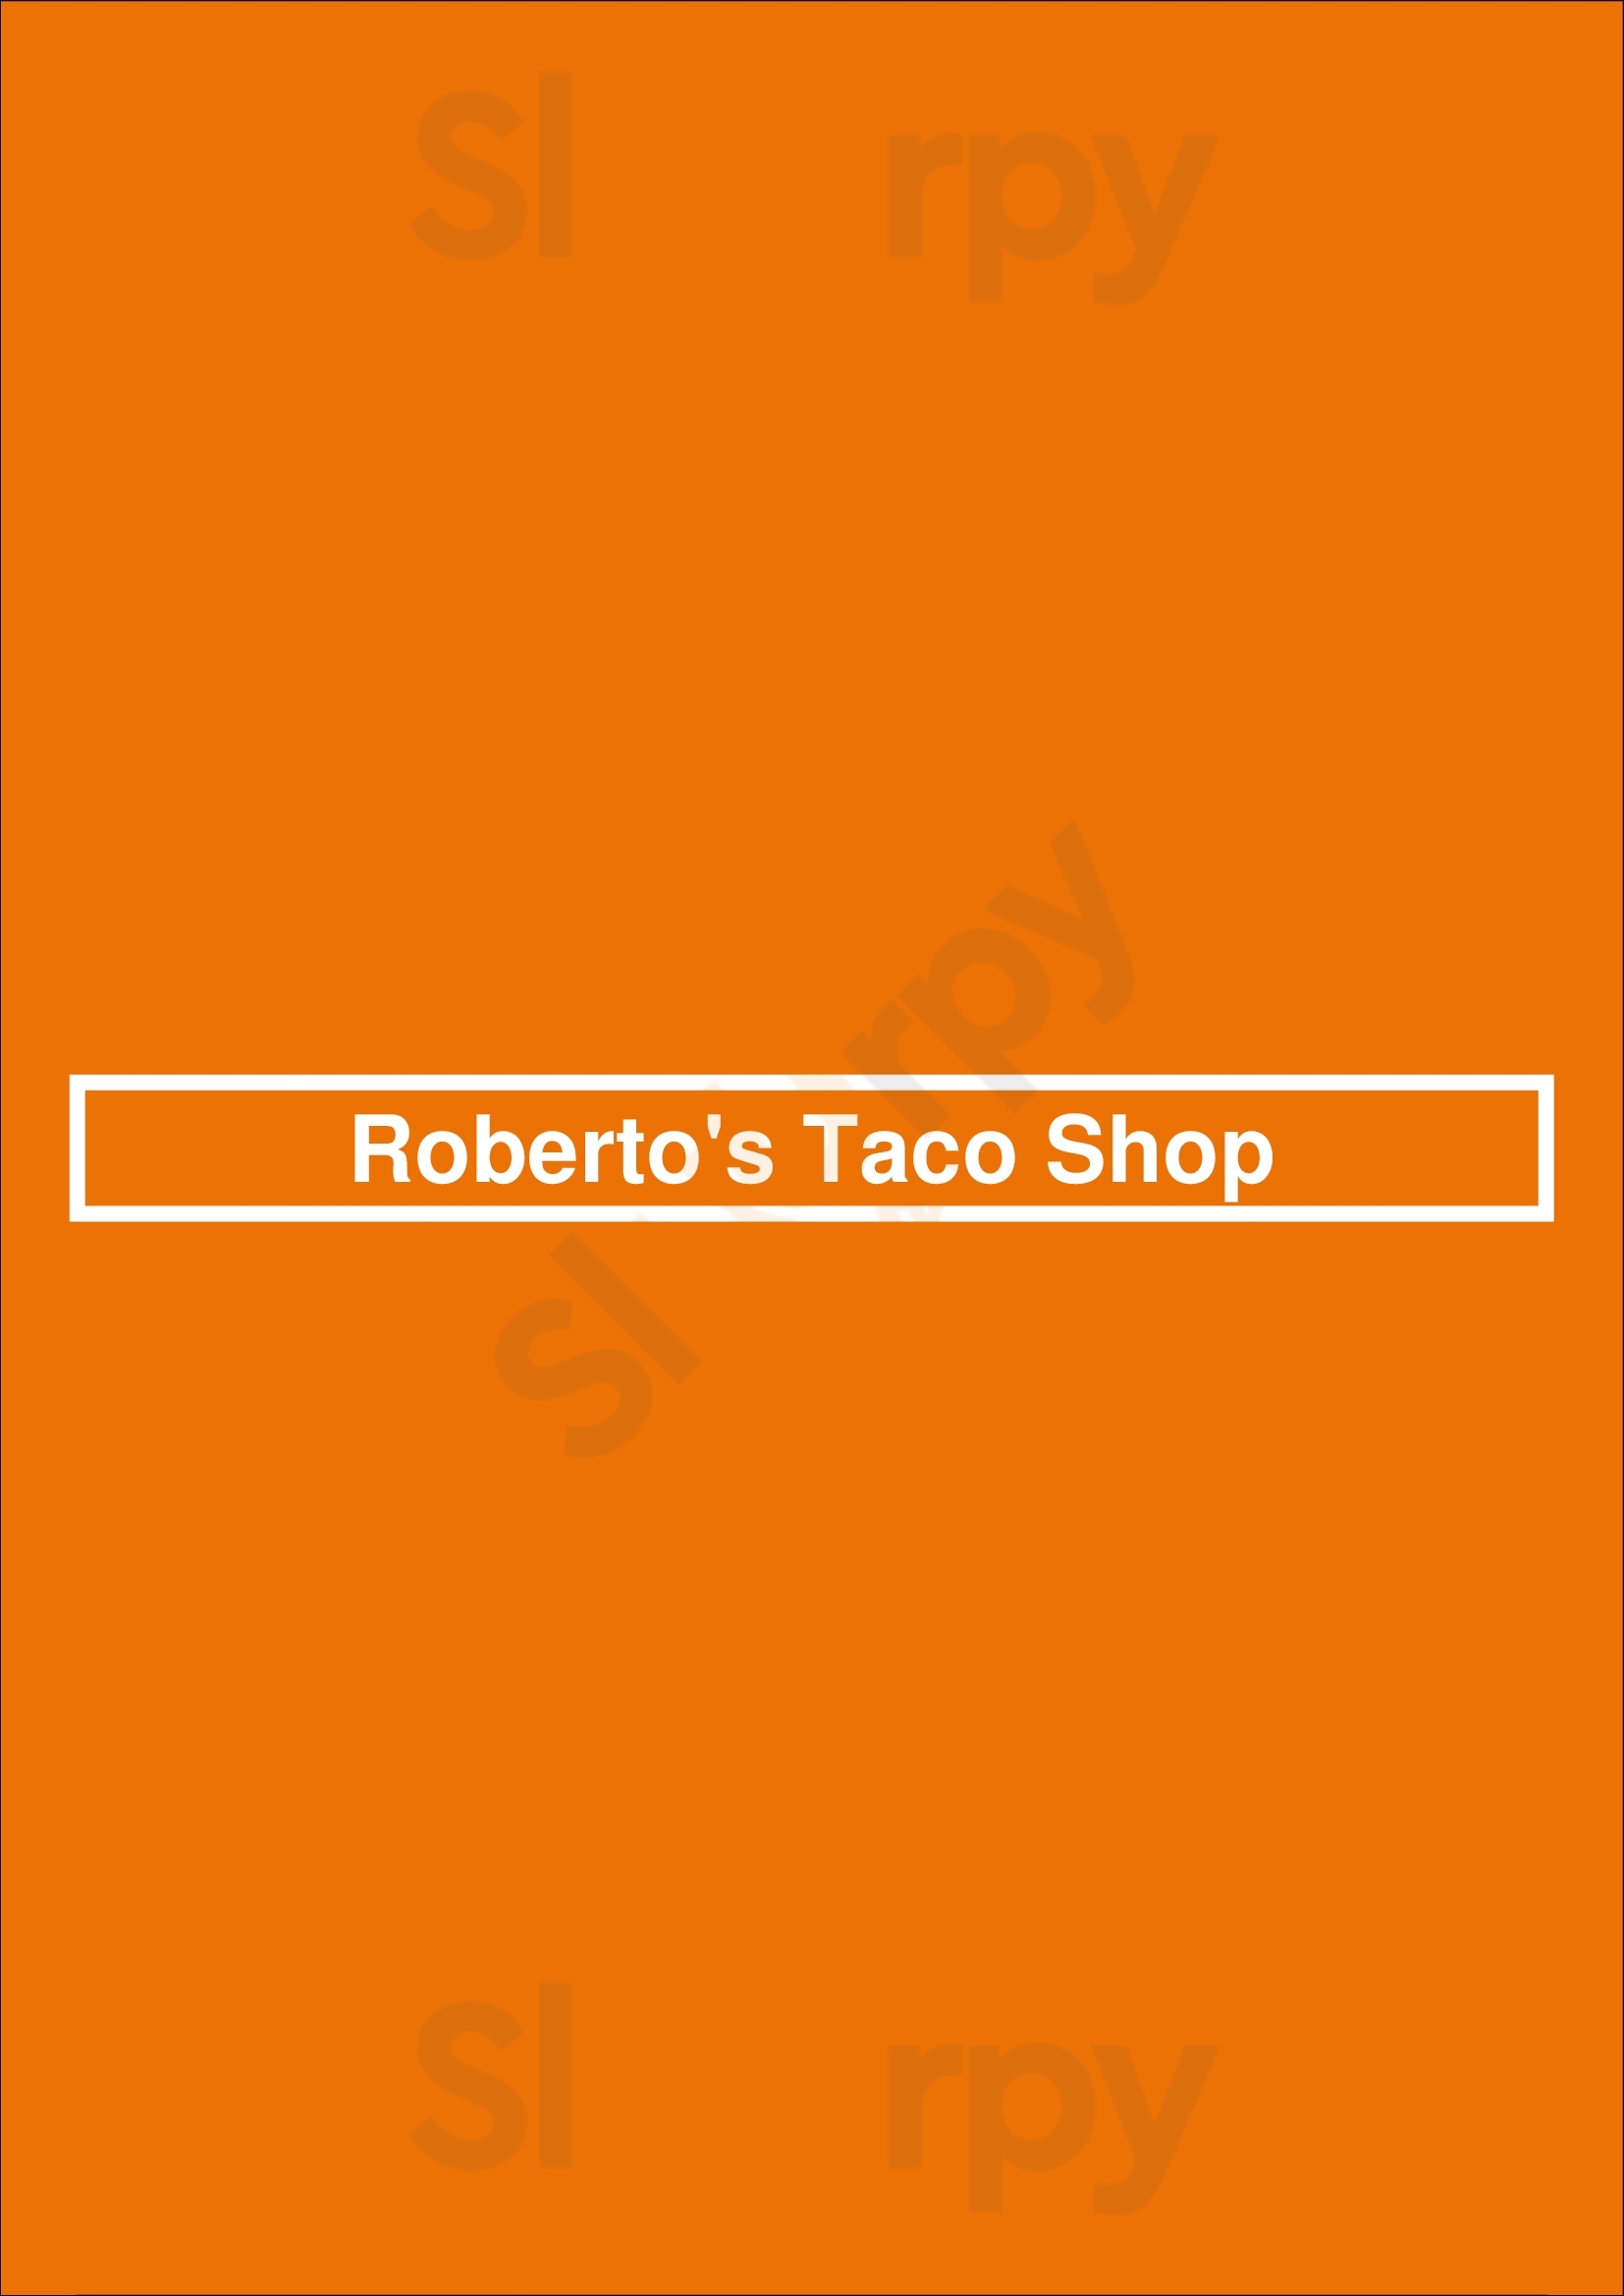 Roberto's Taco Shop San Diego Menu - 1